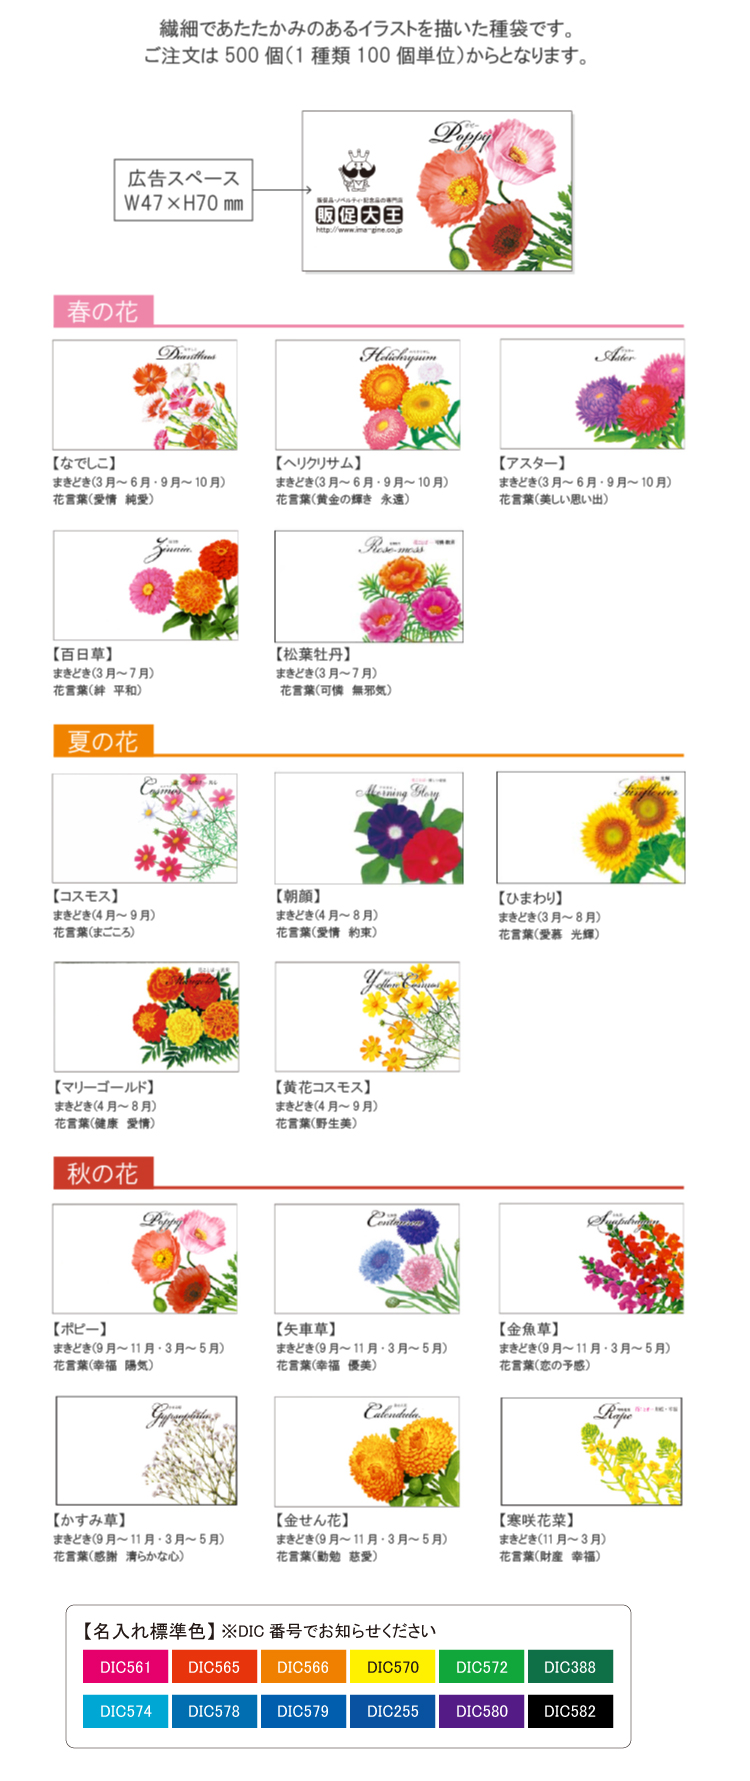 横型イラスト花の種子 最安22円 販促大王 ノベルティ 販促品 記念品の名入れ